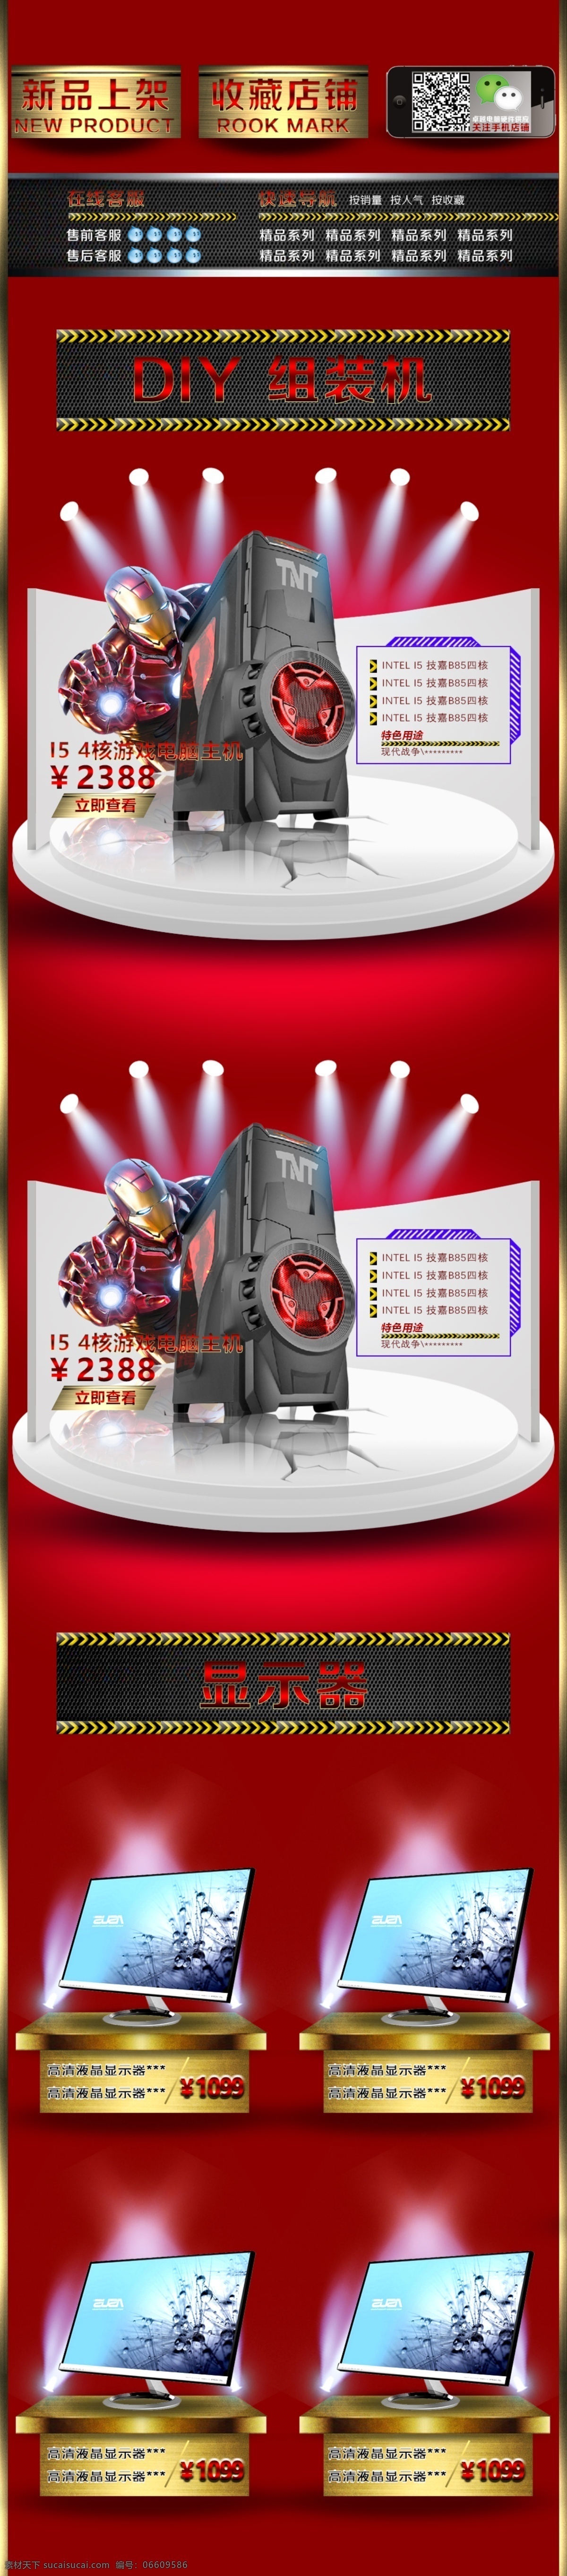 电脑 产品 首页 展示 模块 产品展示 游戏 主机 页 液晶 屏幕 淘宝 用品 原创 稿 3d 模型 舞台 平台 钢铁侠 红色